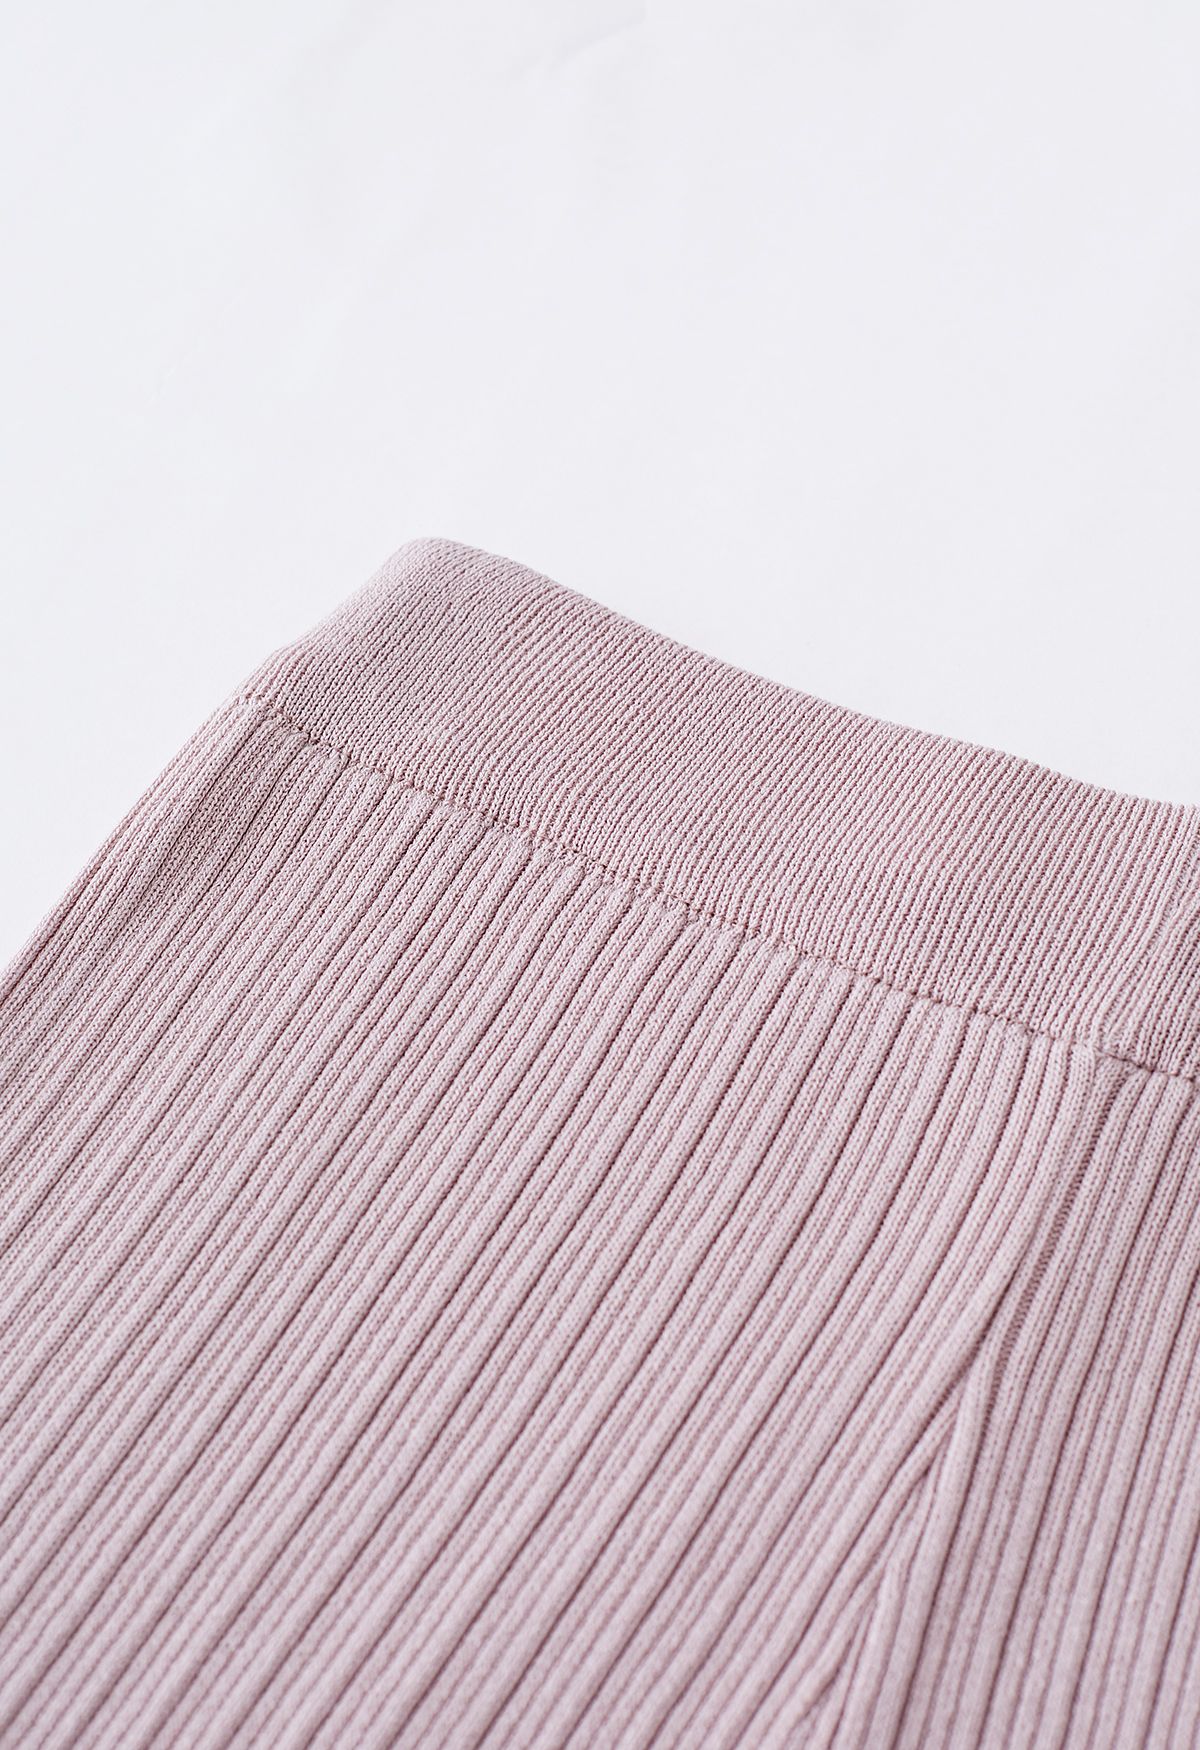 Conjunto de pantalón y top de punto con cordón en la manga en rosa polvoriento